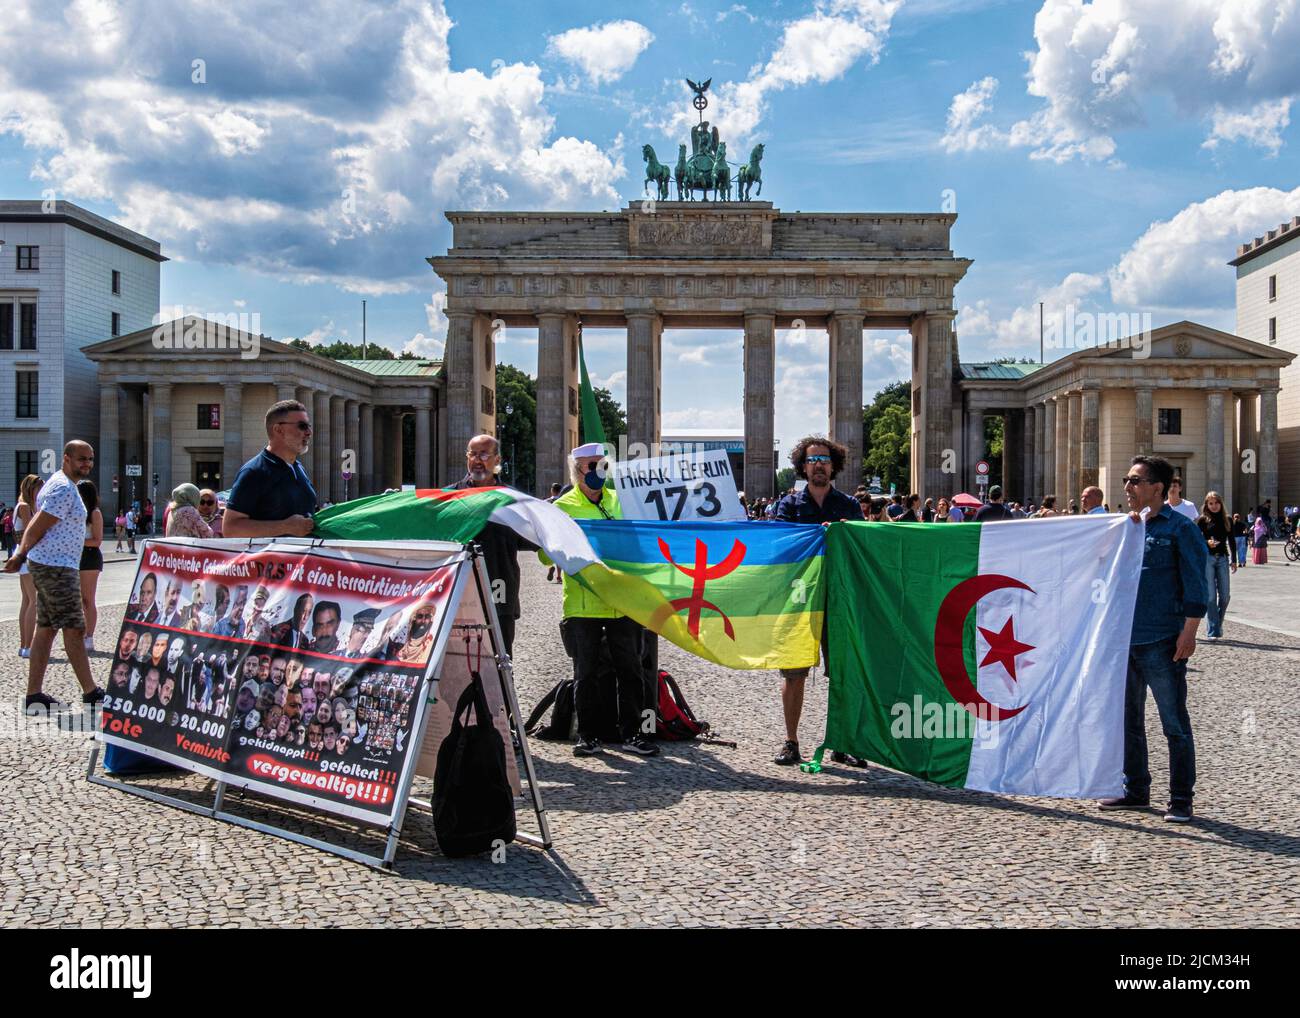 Pariser Platz,Mitte,Berlin - Démo Hirak Berlin 173. Protestation contre la répression et le mauvais traitement des personnes en Algérie Banque D'Images